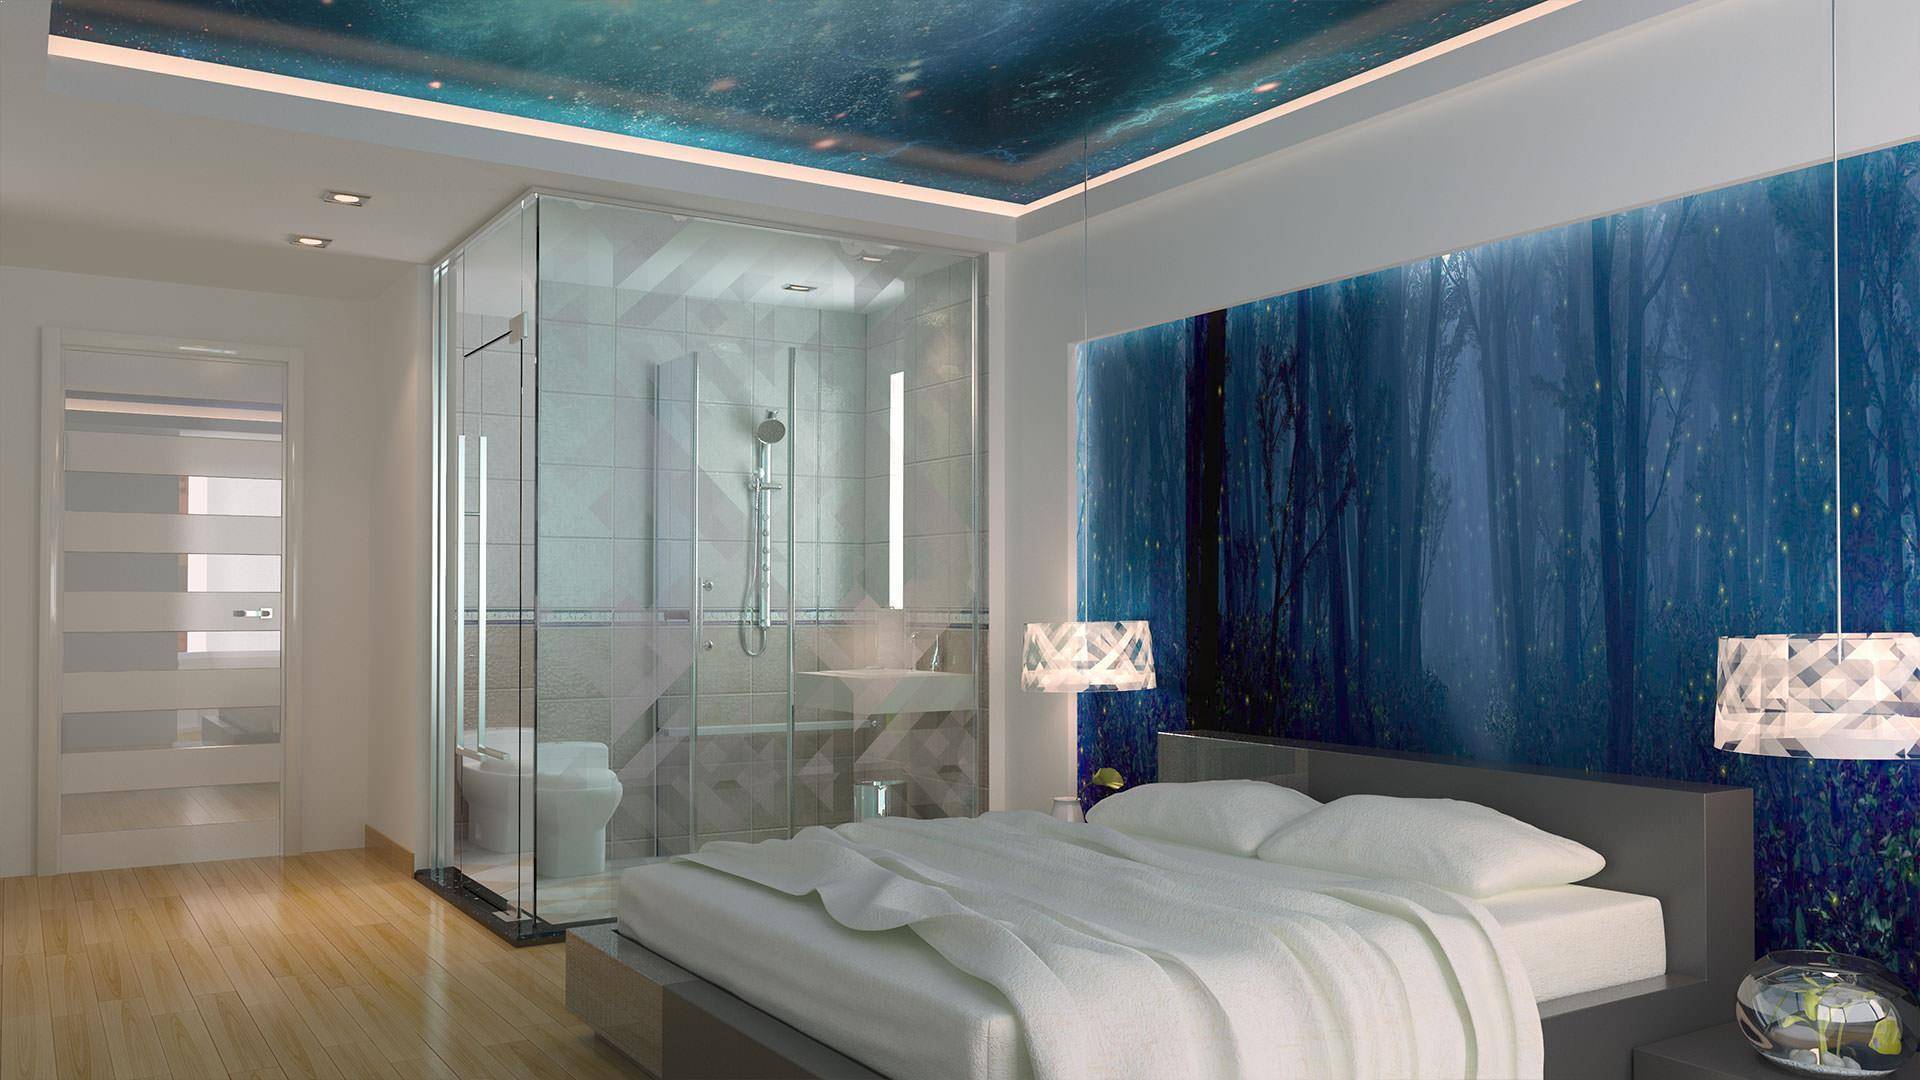 Люстры в спальню к натяжному потолку: виды, размеры и формы, варианты дизайна с фото, способы крепления.